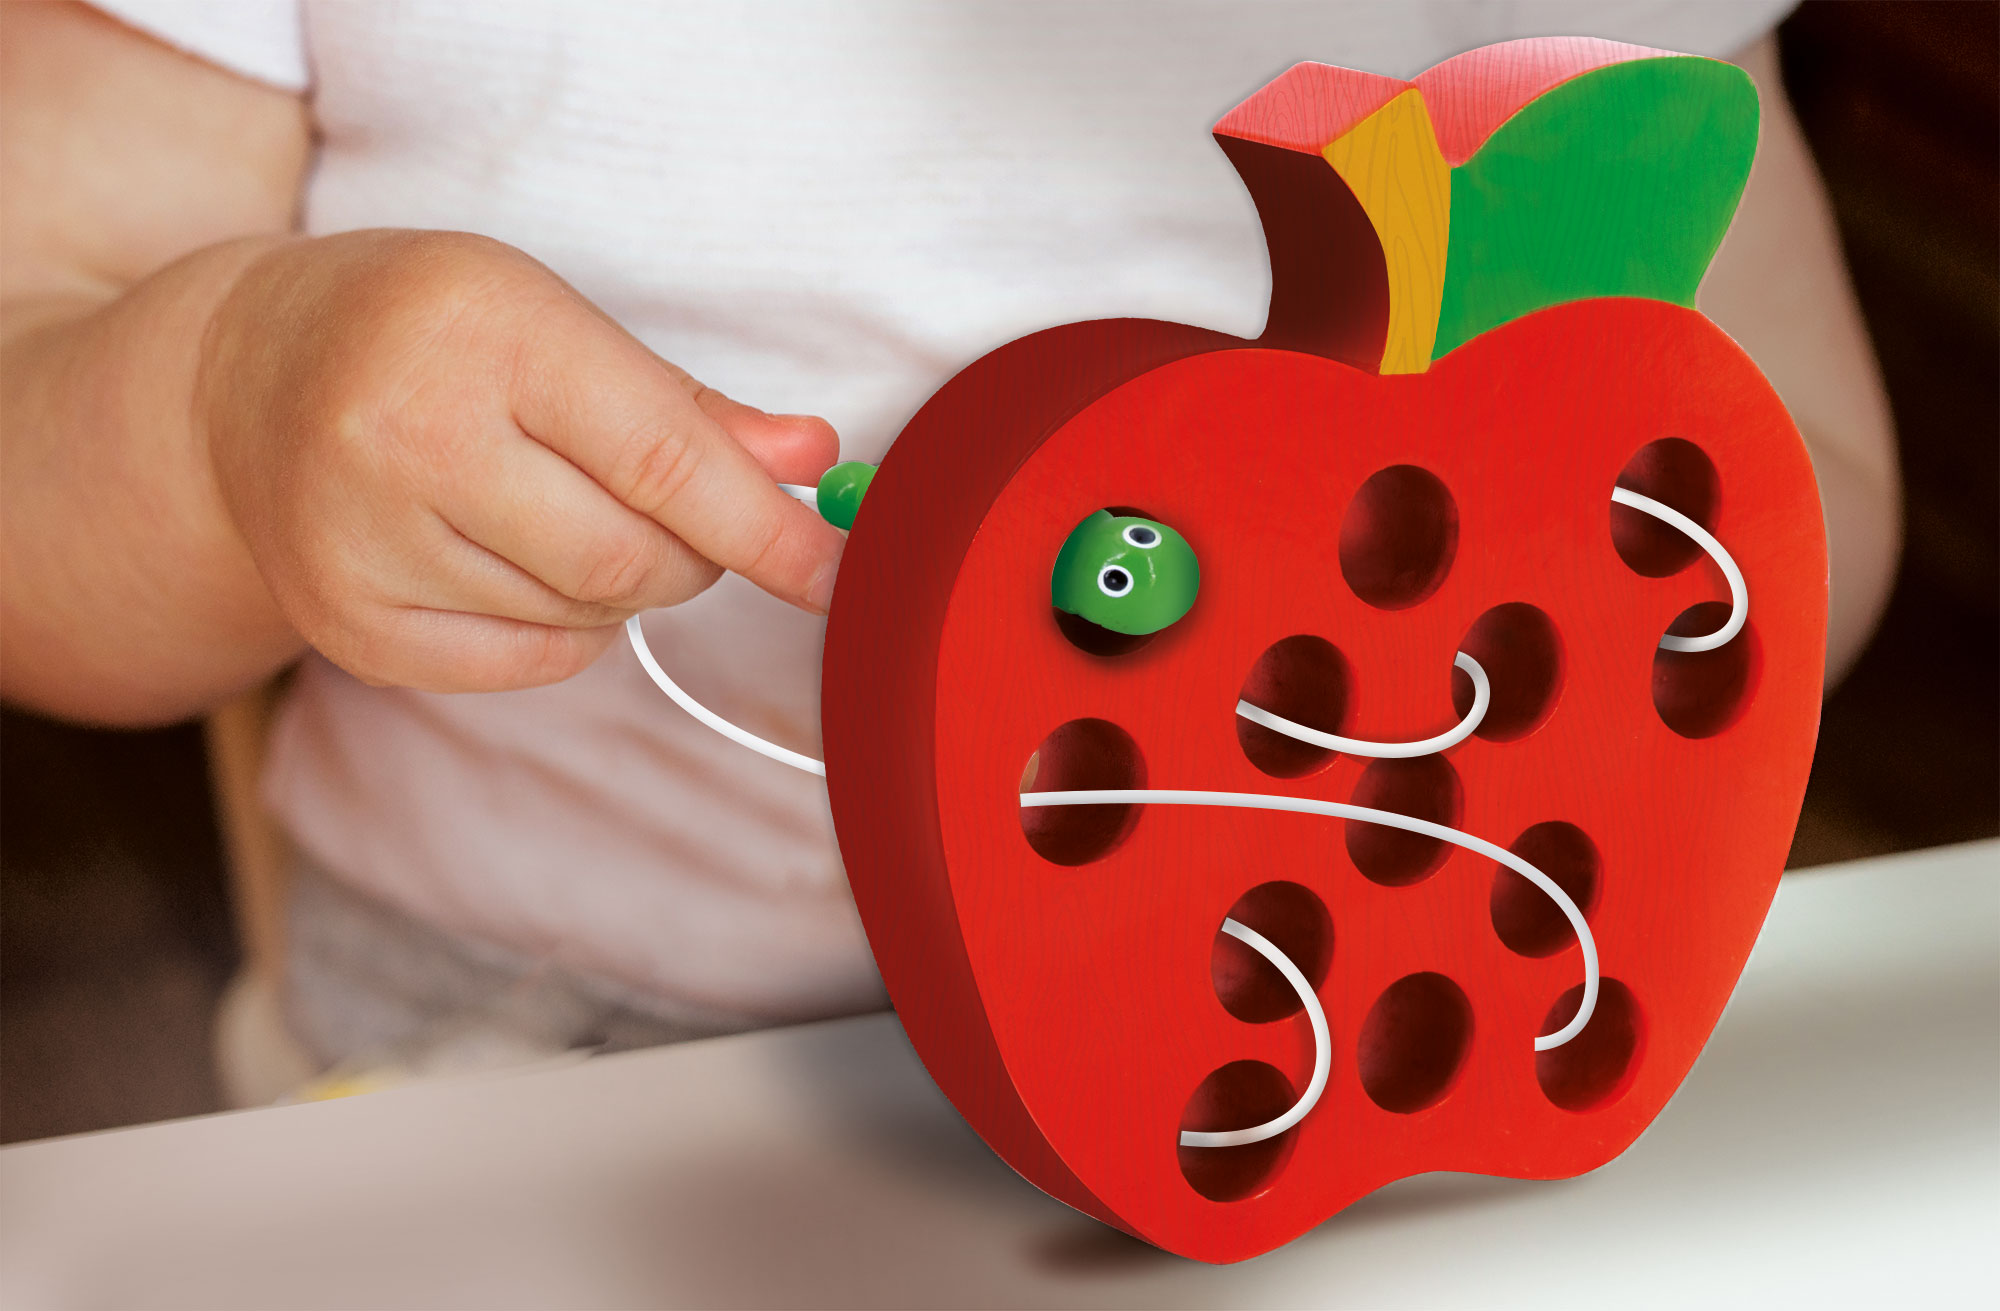 LERNEN & CO Schnurspiel Wurm Lisciani Montessori Baby Puzzle, Lernspiele, von mit mehrfarbig